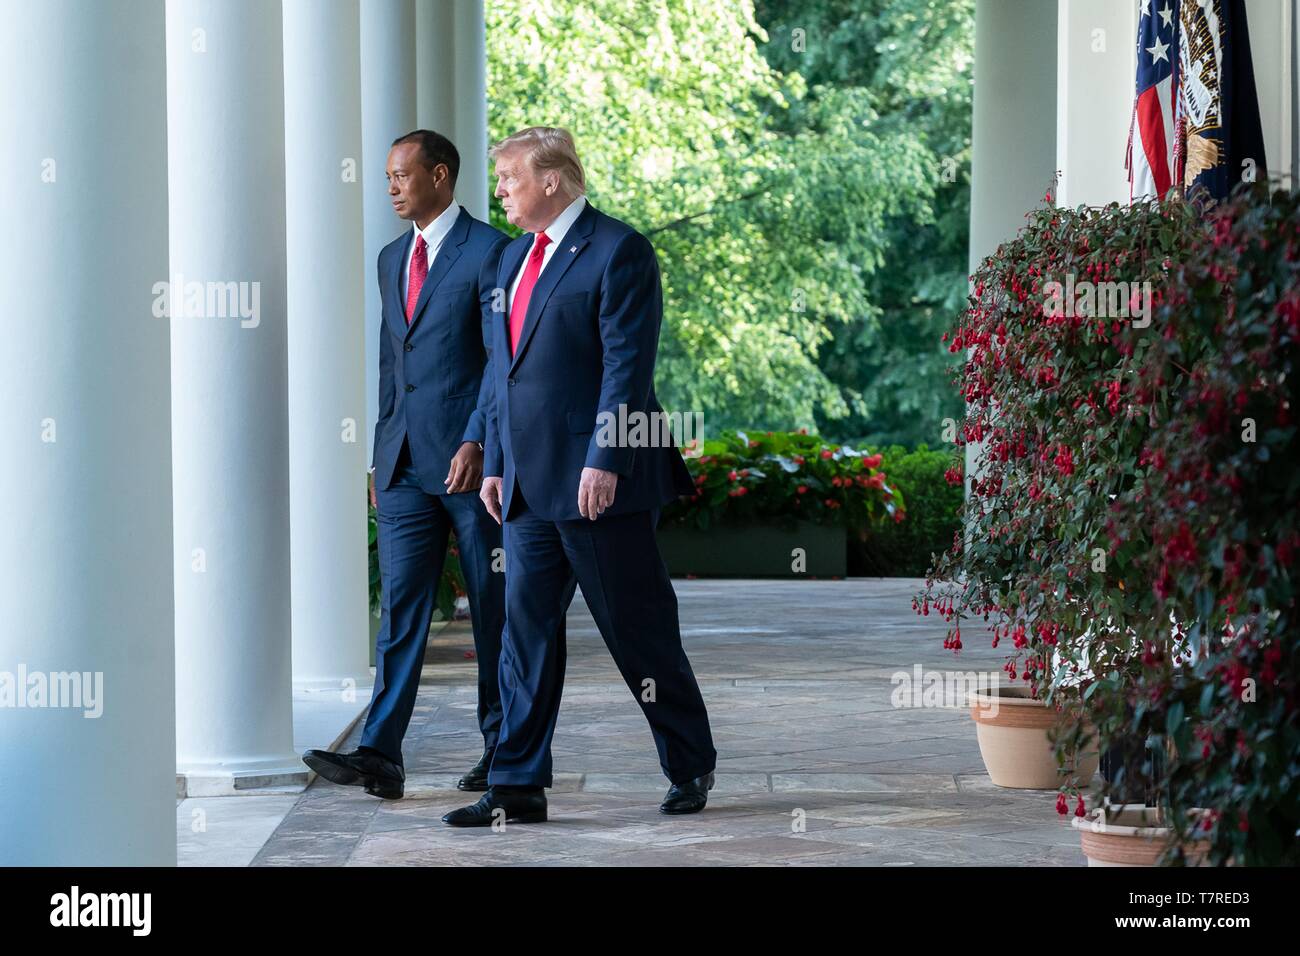 Président américain Donald Trump escorts golfeur Tiger Woods au cours de la présentation de la Médaille présidentielle de la liberté dans la roseraie de la Maison Blanche le 6 mai 2019 à Washington, DC. Banque D'Images